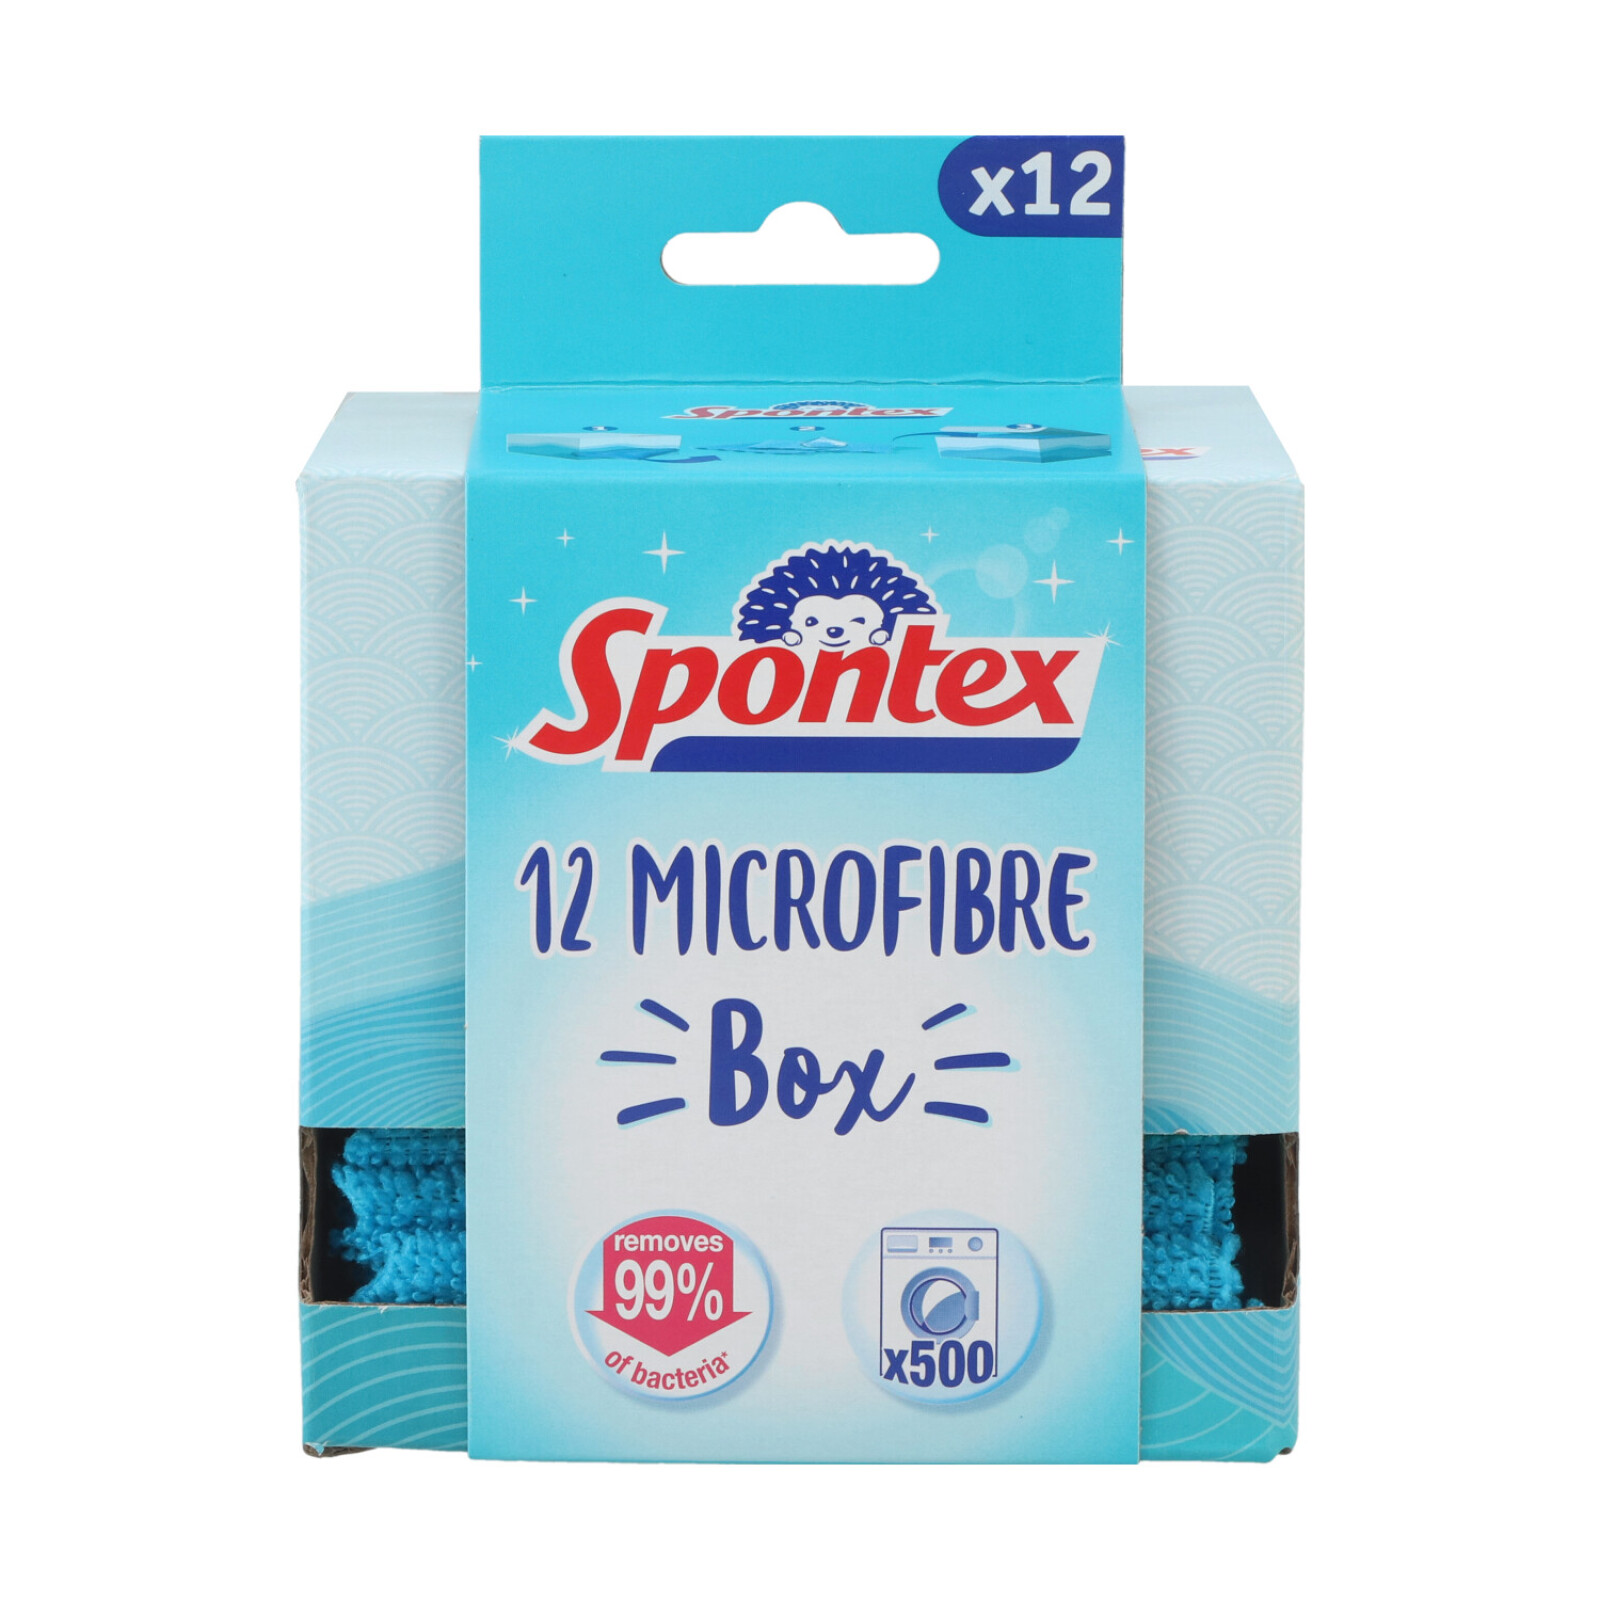 Spontex Microfastertücher 12 Stück BoX